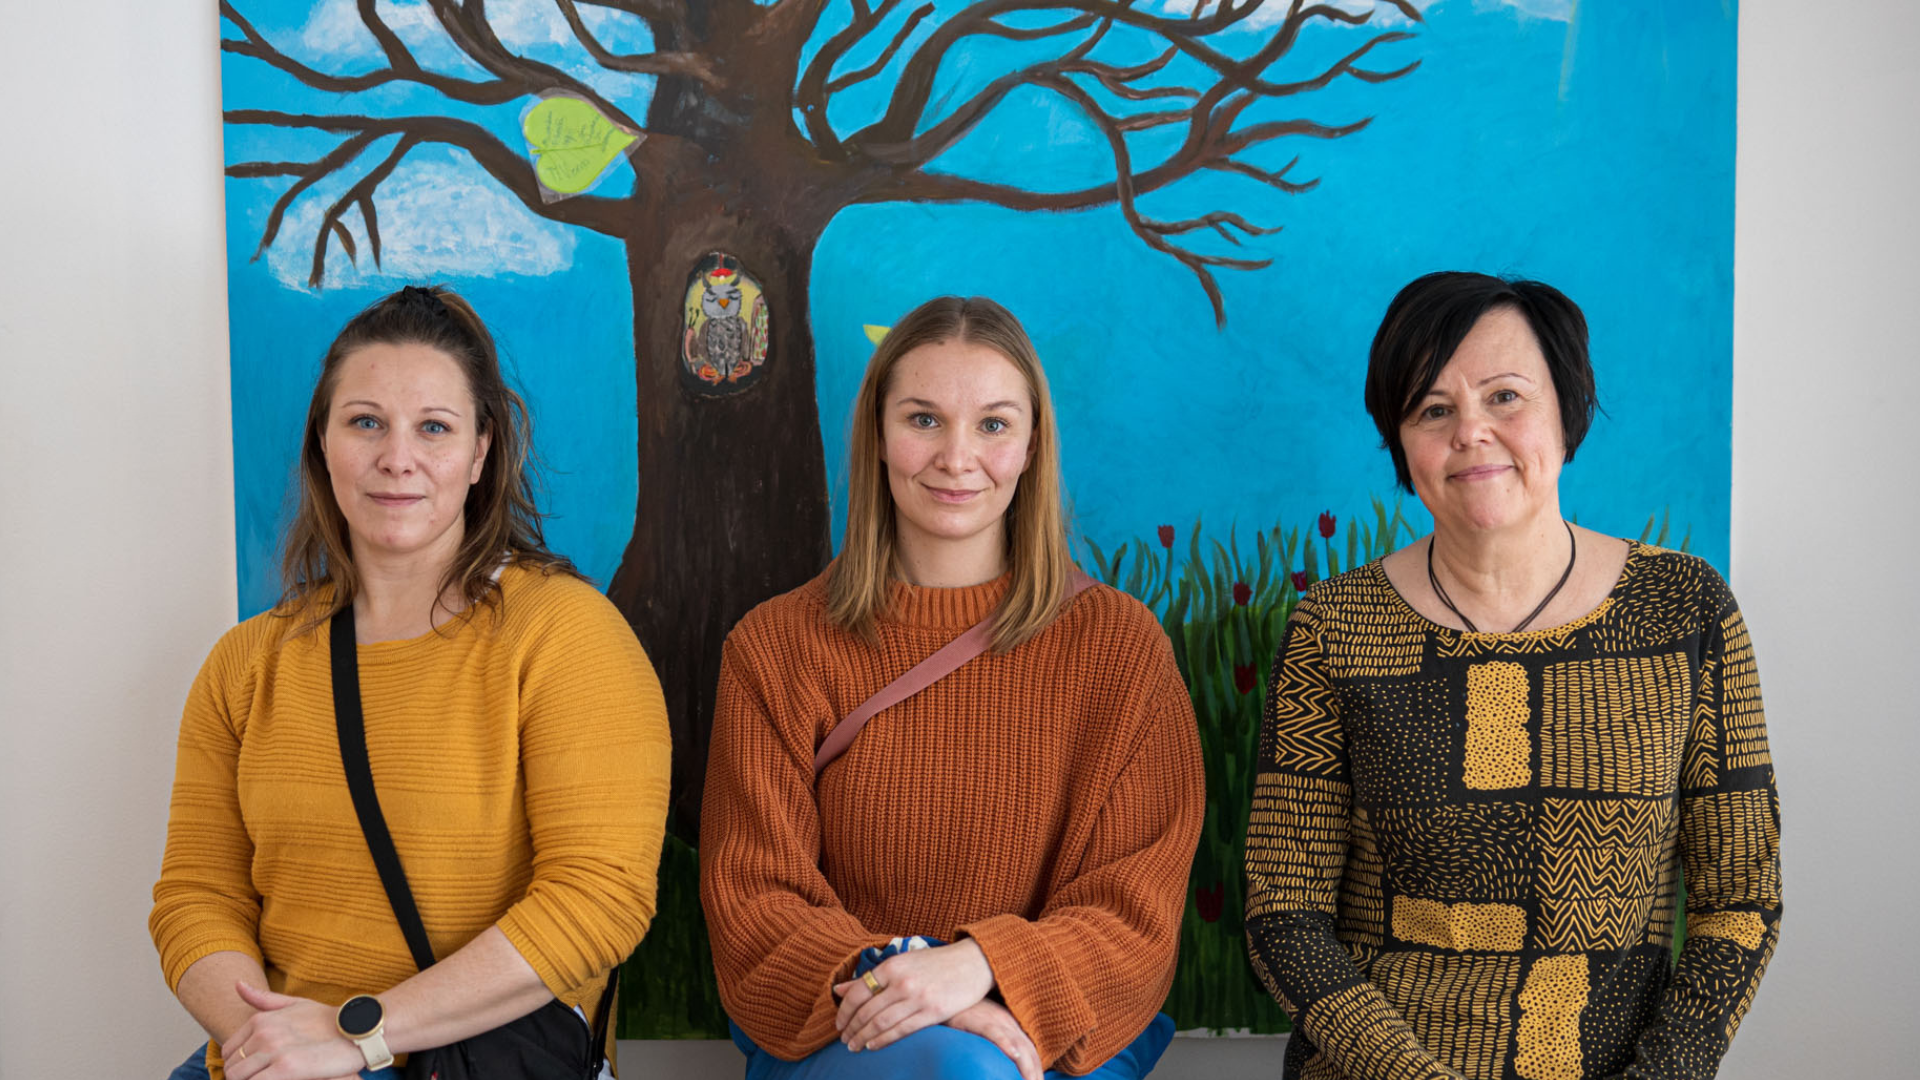 Mervi Taipalus, Roosa-Maria Routi ja Taina Väinölä istuvat kotiutumispuun edessä, johon kerätään tsemppiviestejä sijaishuollosta kotiutuvilta nuorilta saapuville nuorille.